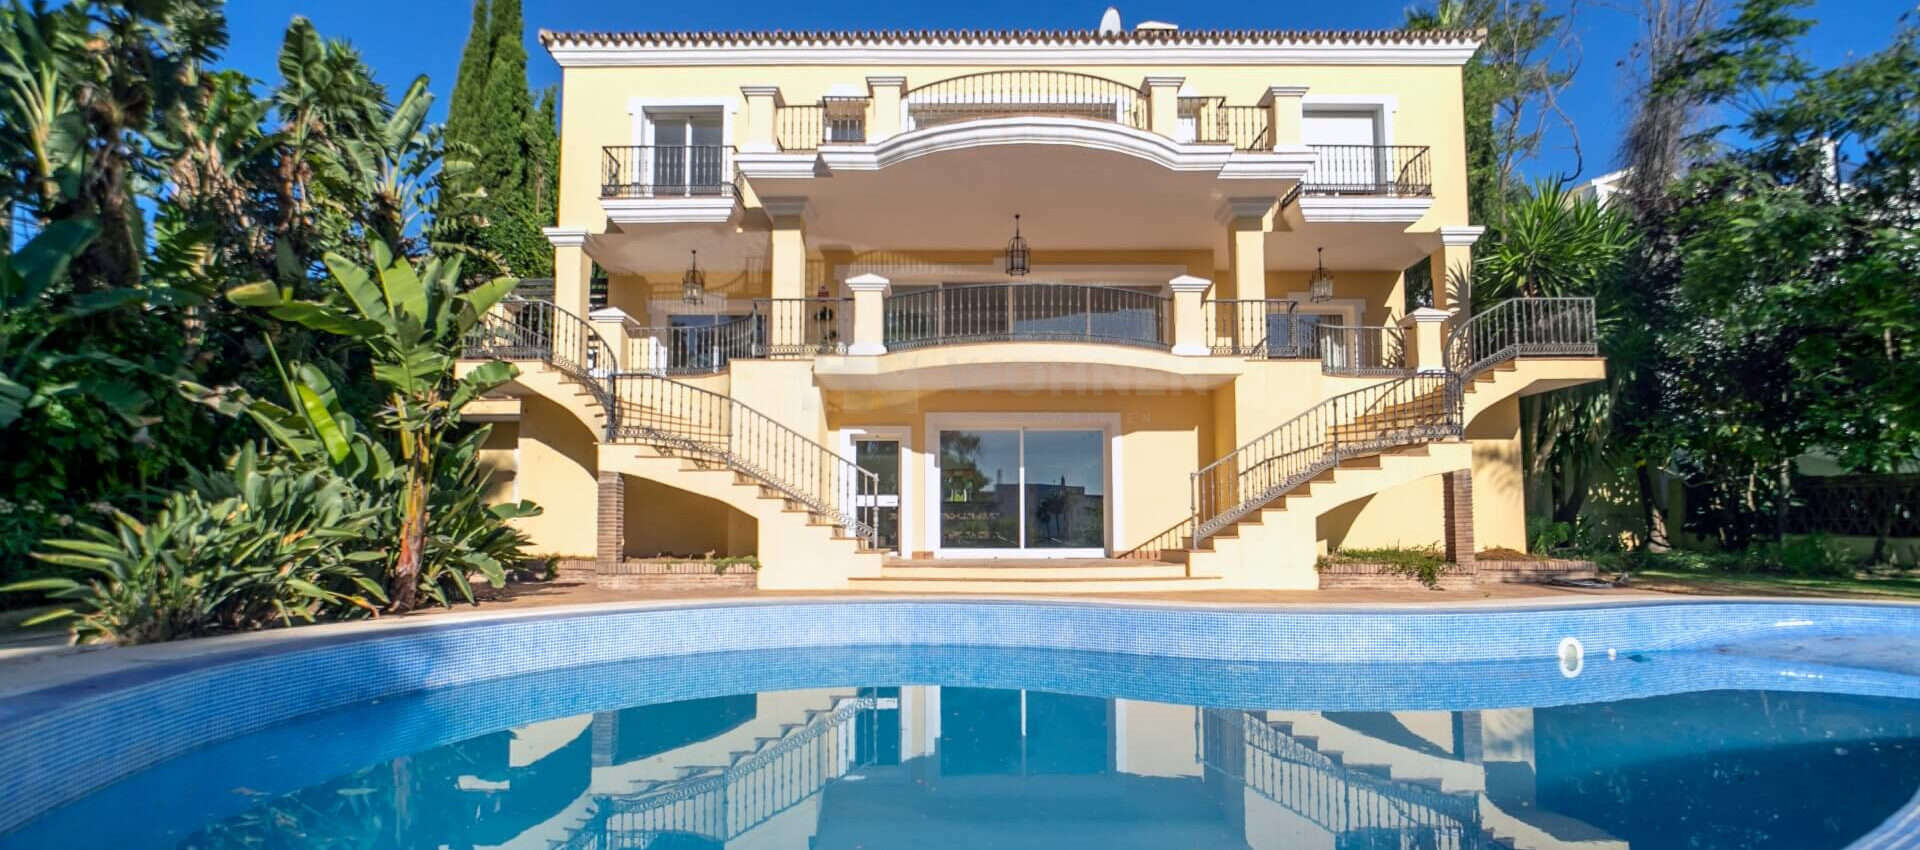 Wunderschöne Villa im Herrenhausstil in erster Golflinie von La Quinta Golf